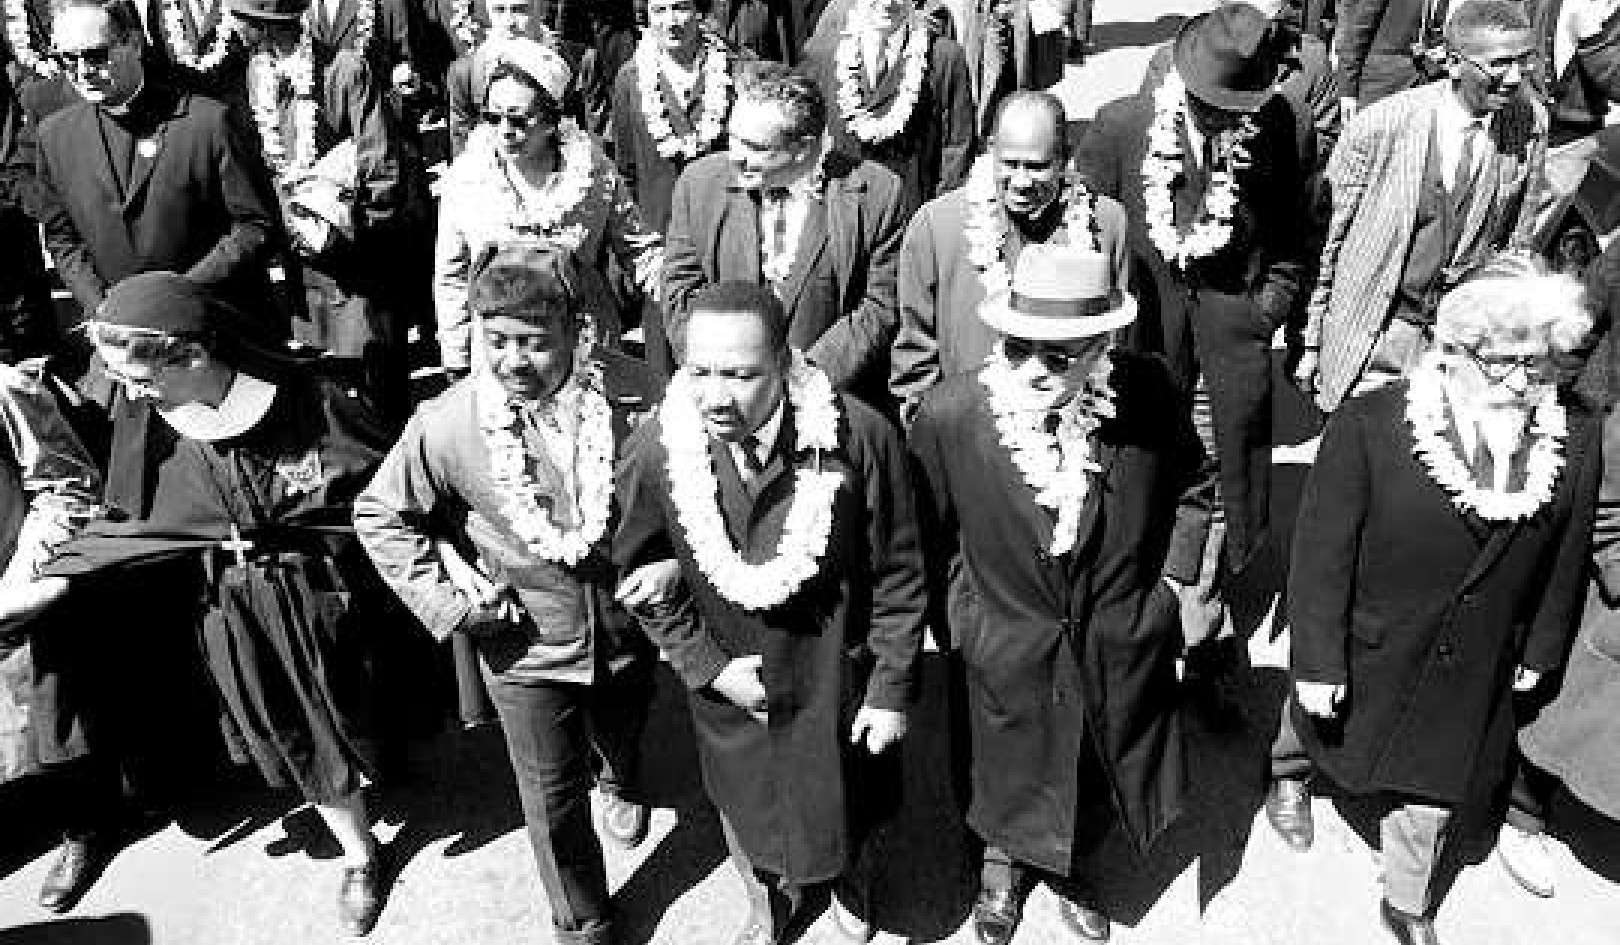 MLKs Vision von sozialer Gerechtigkeit umfasste ein Haus vieler Glaubensrichtungen